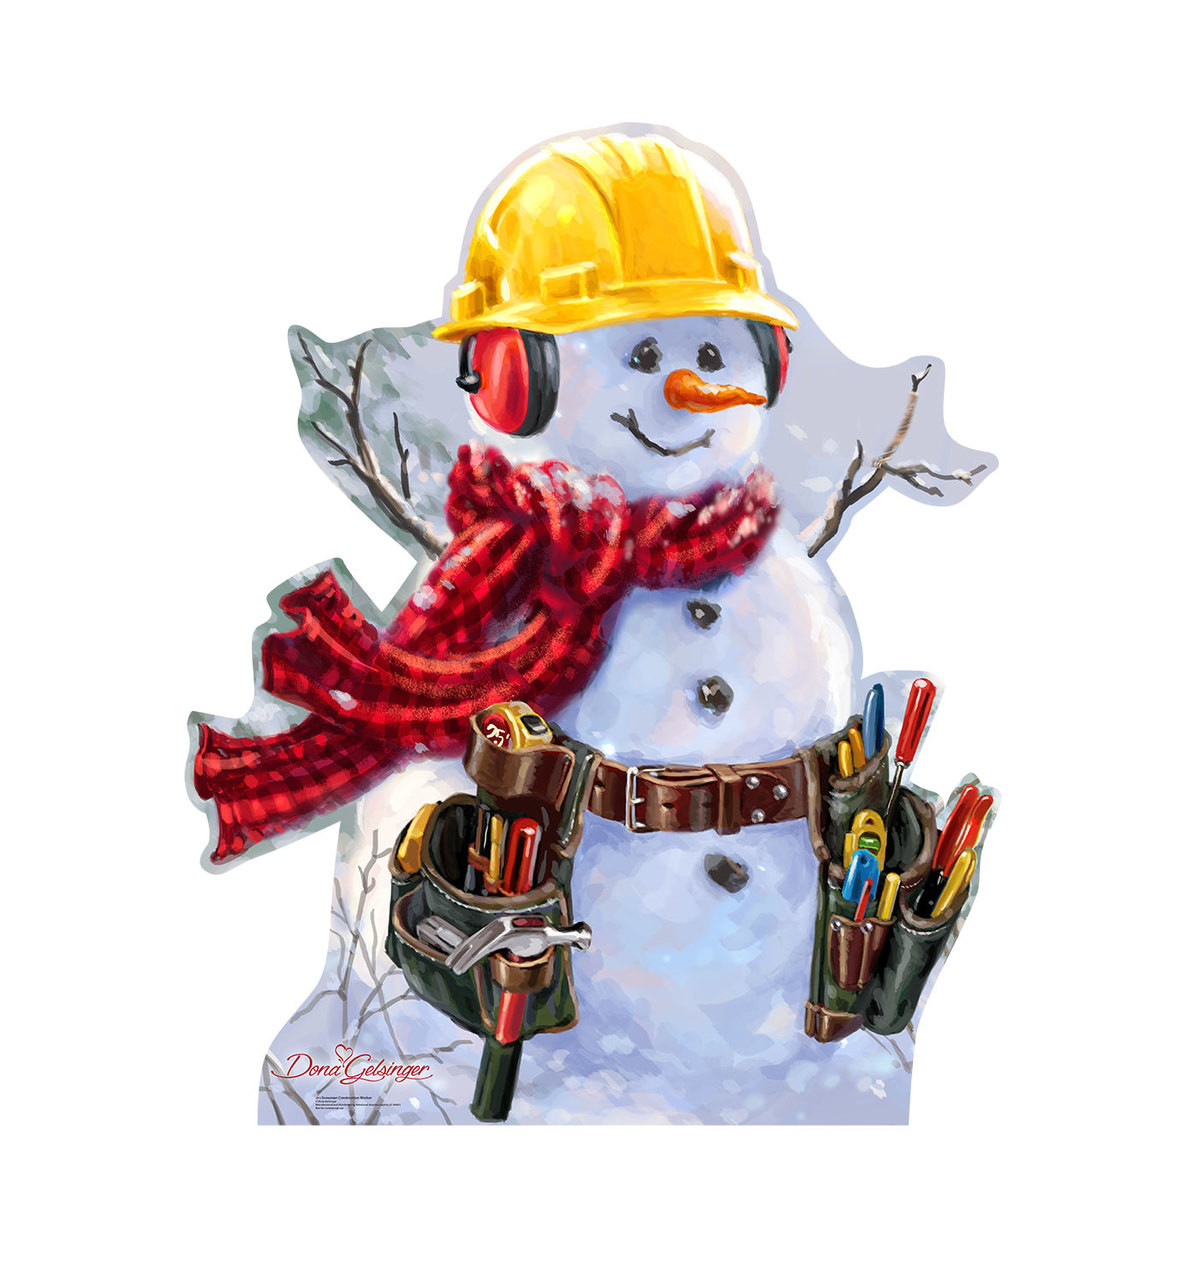 Snowman Construction Worker Cardboard Cutout - Dona Gelsinger -  2113